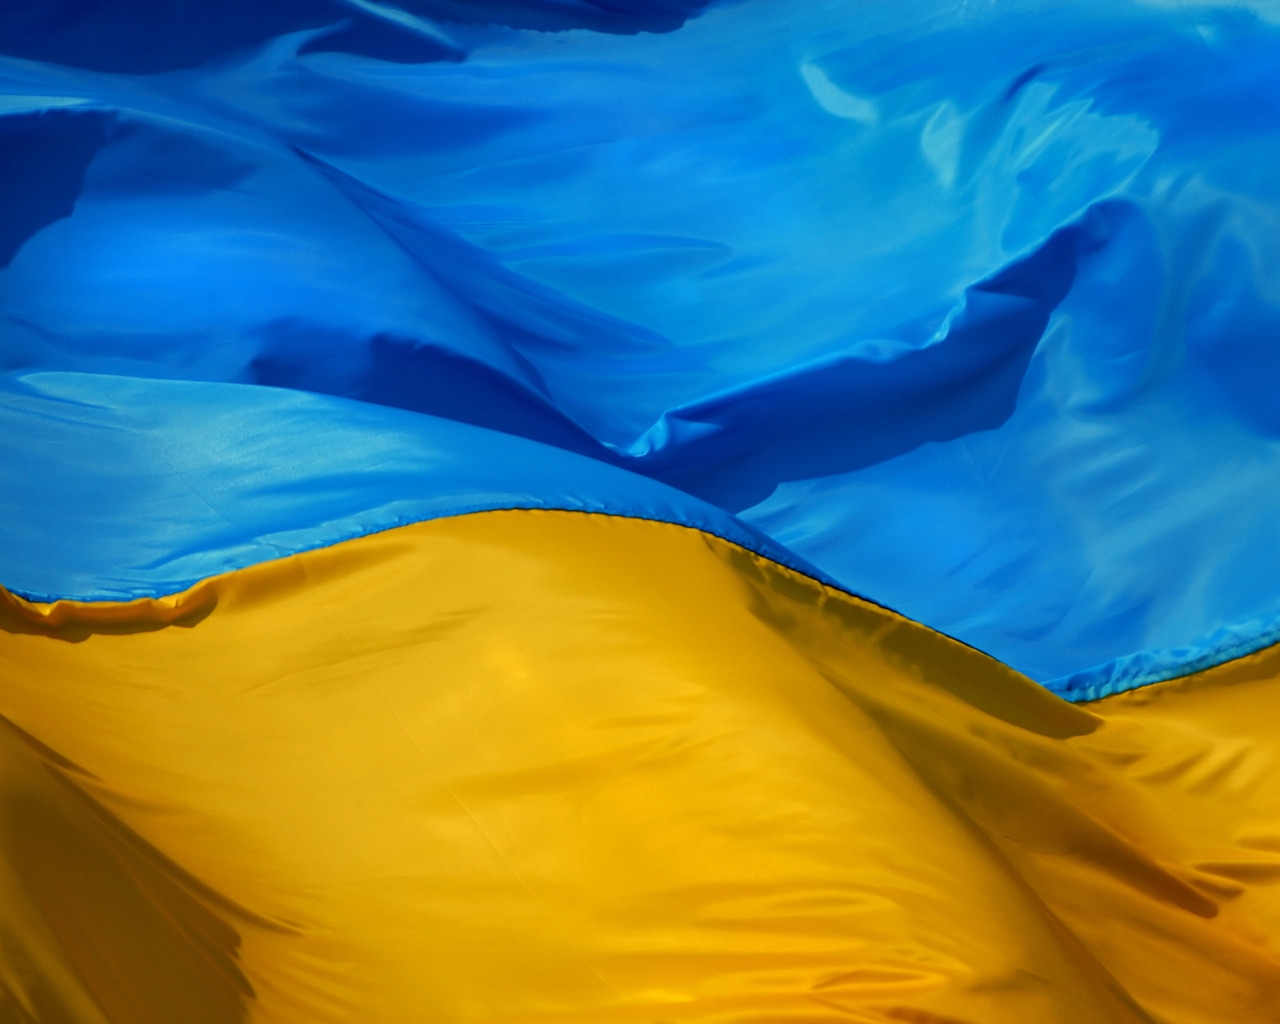 Ukraine Flag for 1280 x 1024 resolution